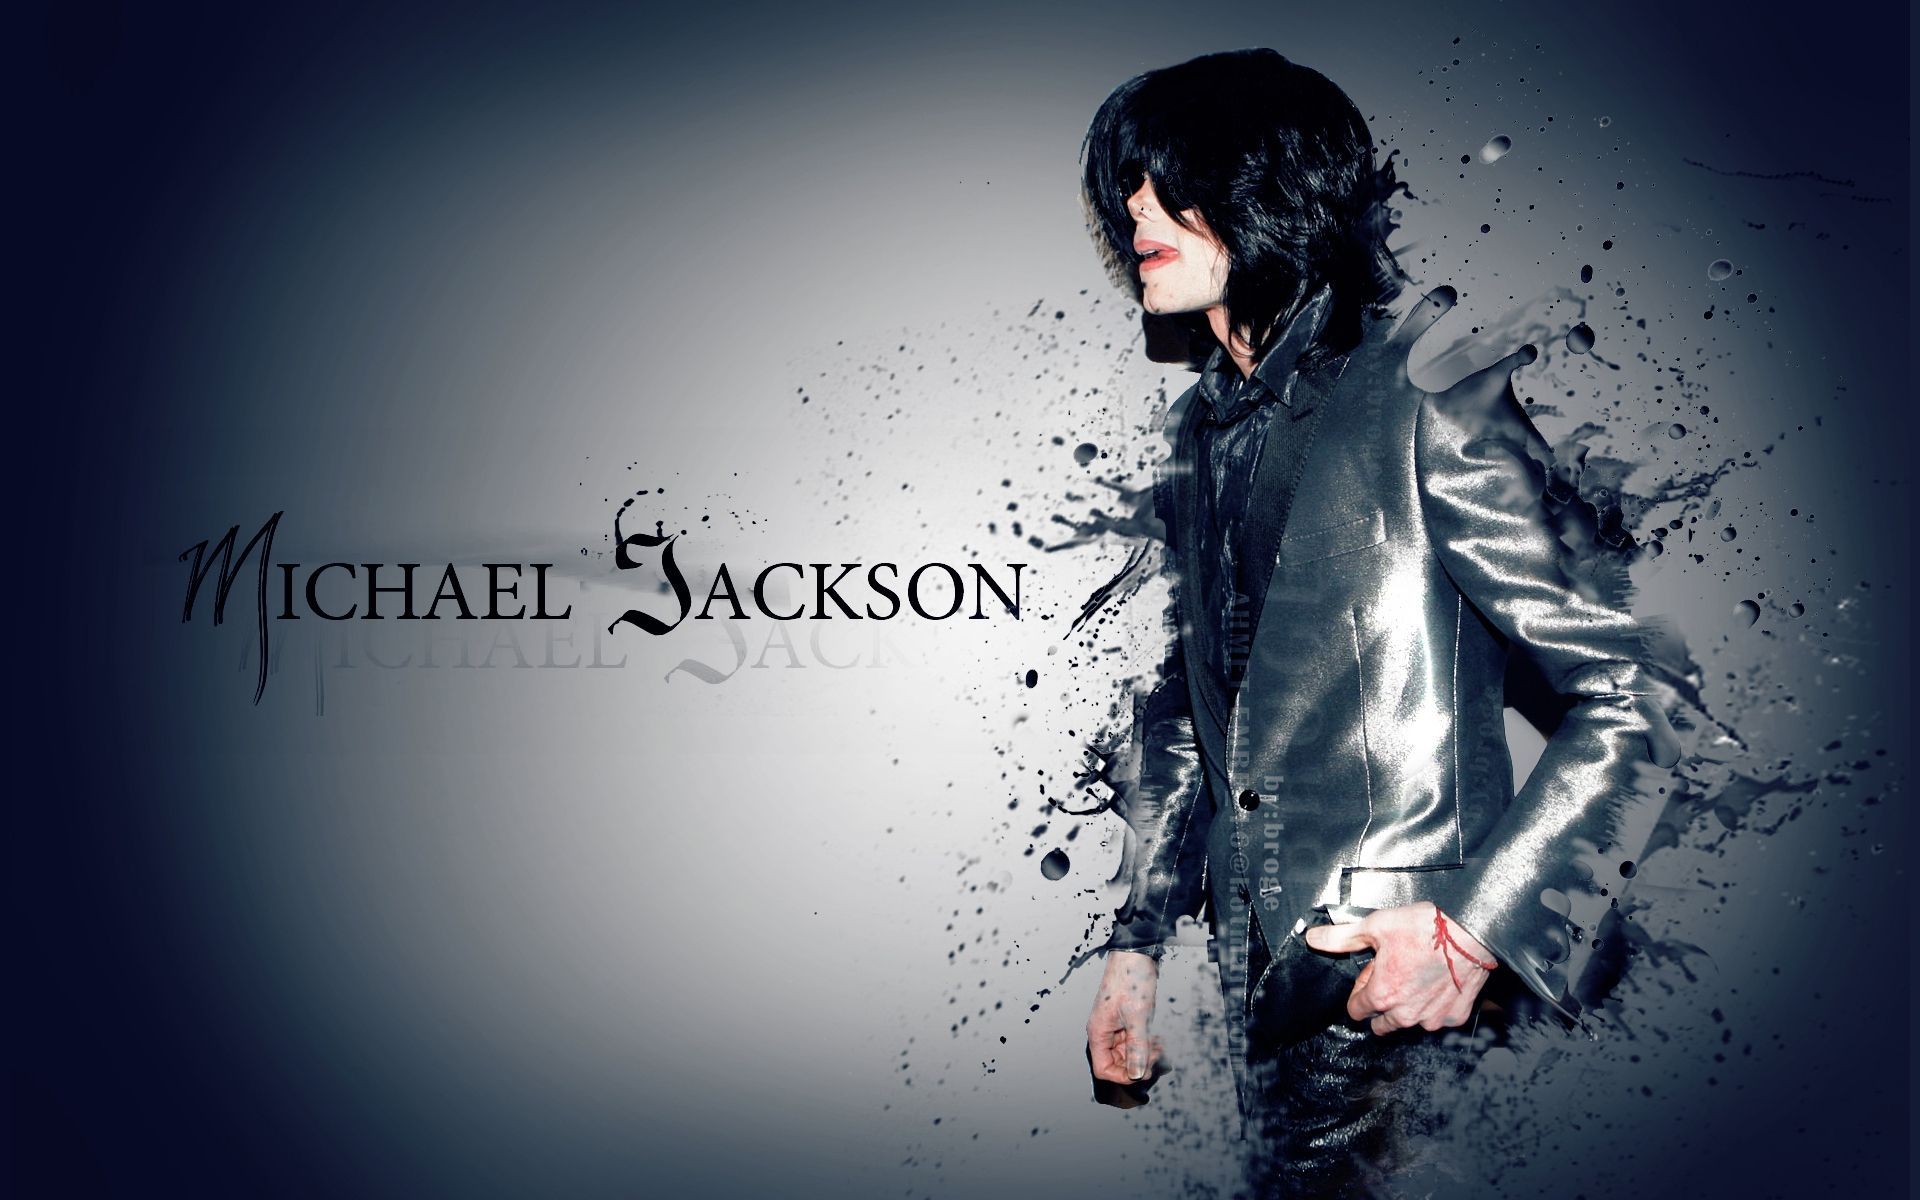 Fondos de Michael Jackson - Los mejores fondos de Michael Jackson gratis